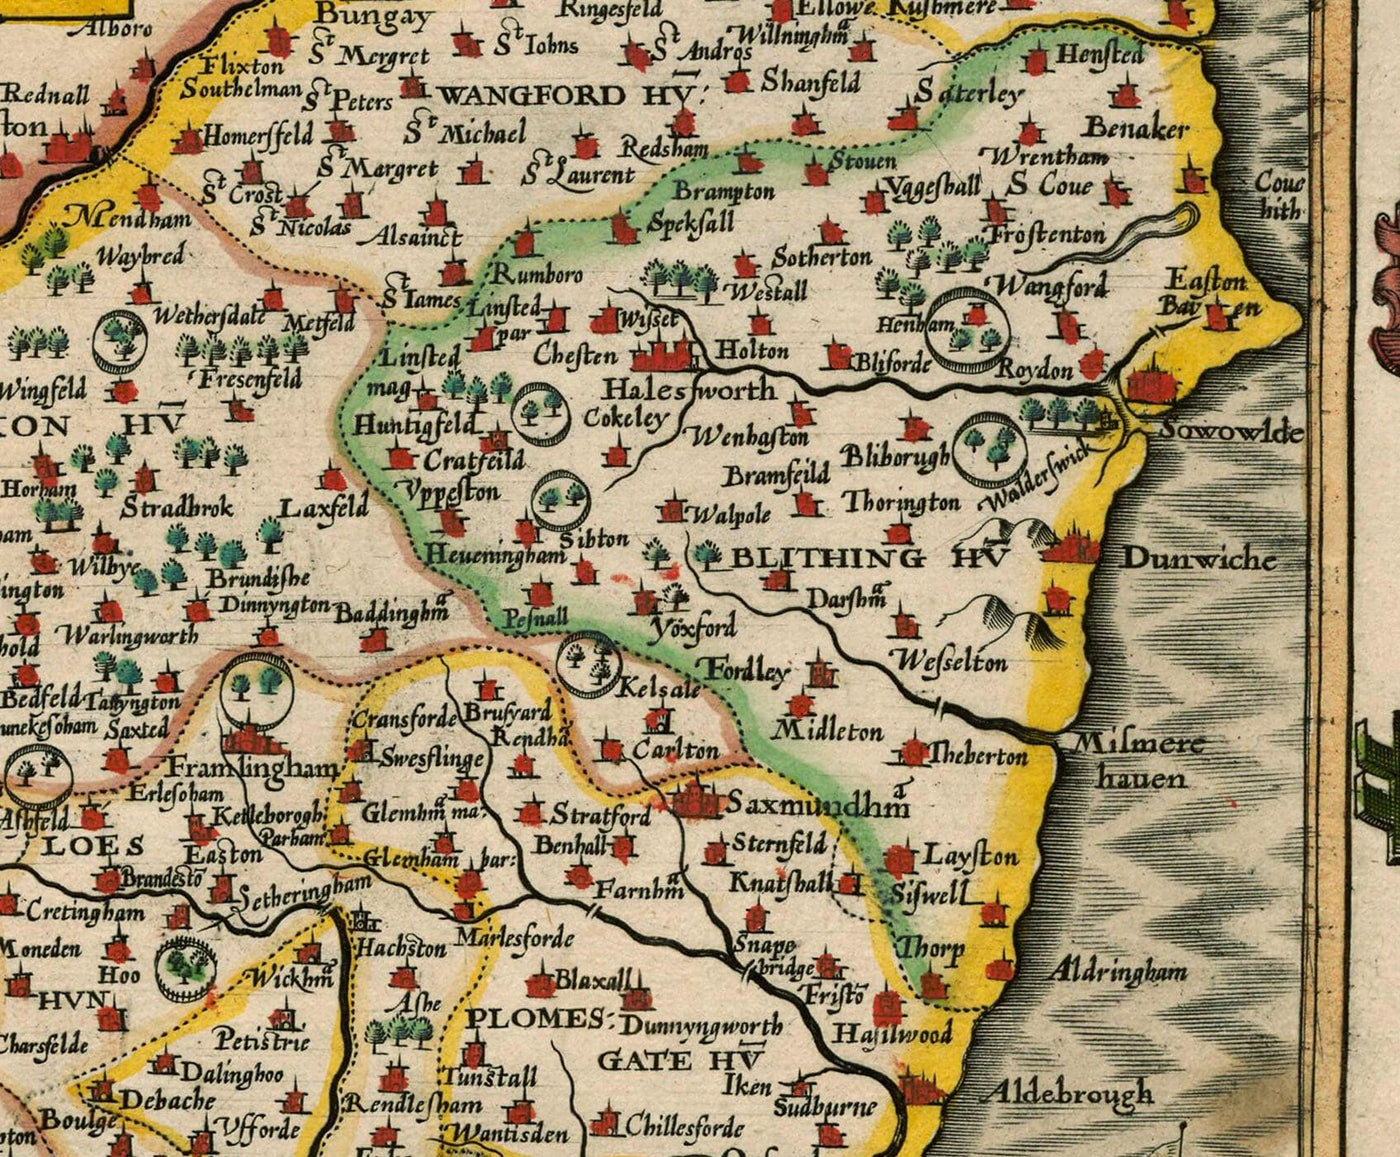 Alte Karte von Suffolk, 1611 von John Speed ​​- Ipswich, Niedrigstart, Bury St. Edmunds, Haverhill